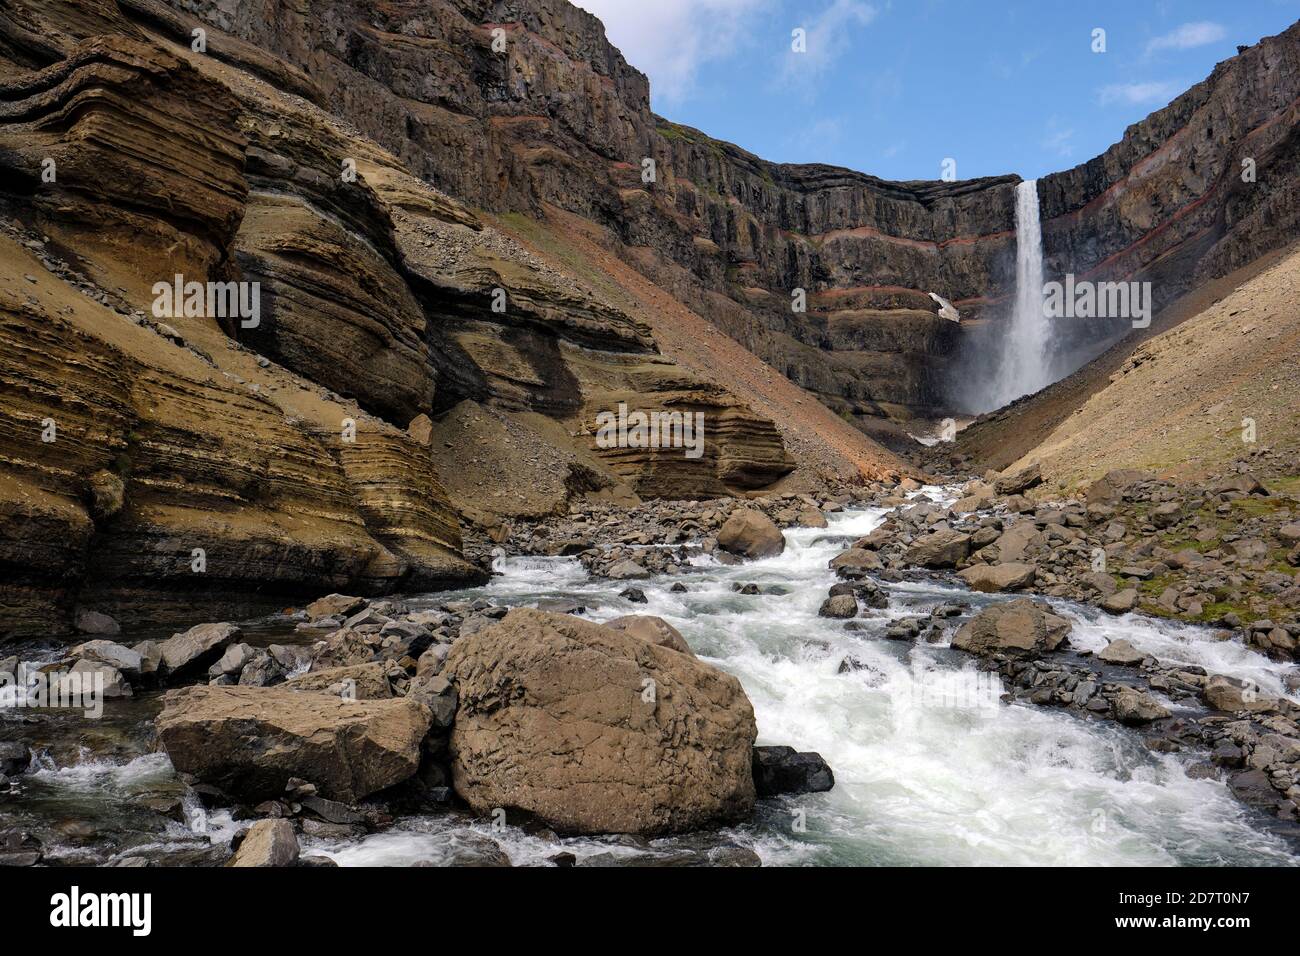 La cascade de Hengifoss et la rivière Hengifossa dans le paysage des hautes terres de Fljótsdalshreppur est de l'Islande Banque D'Images